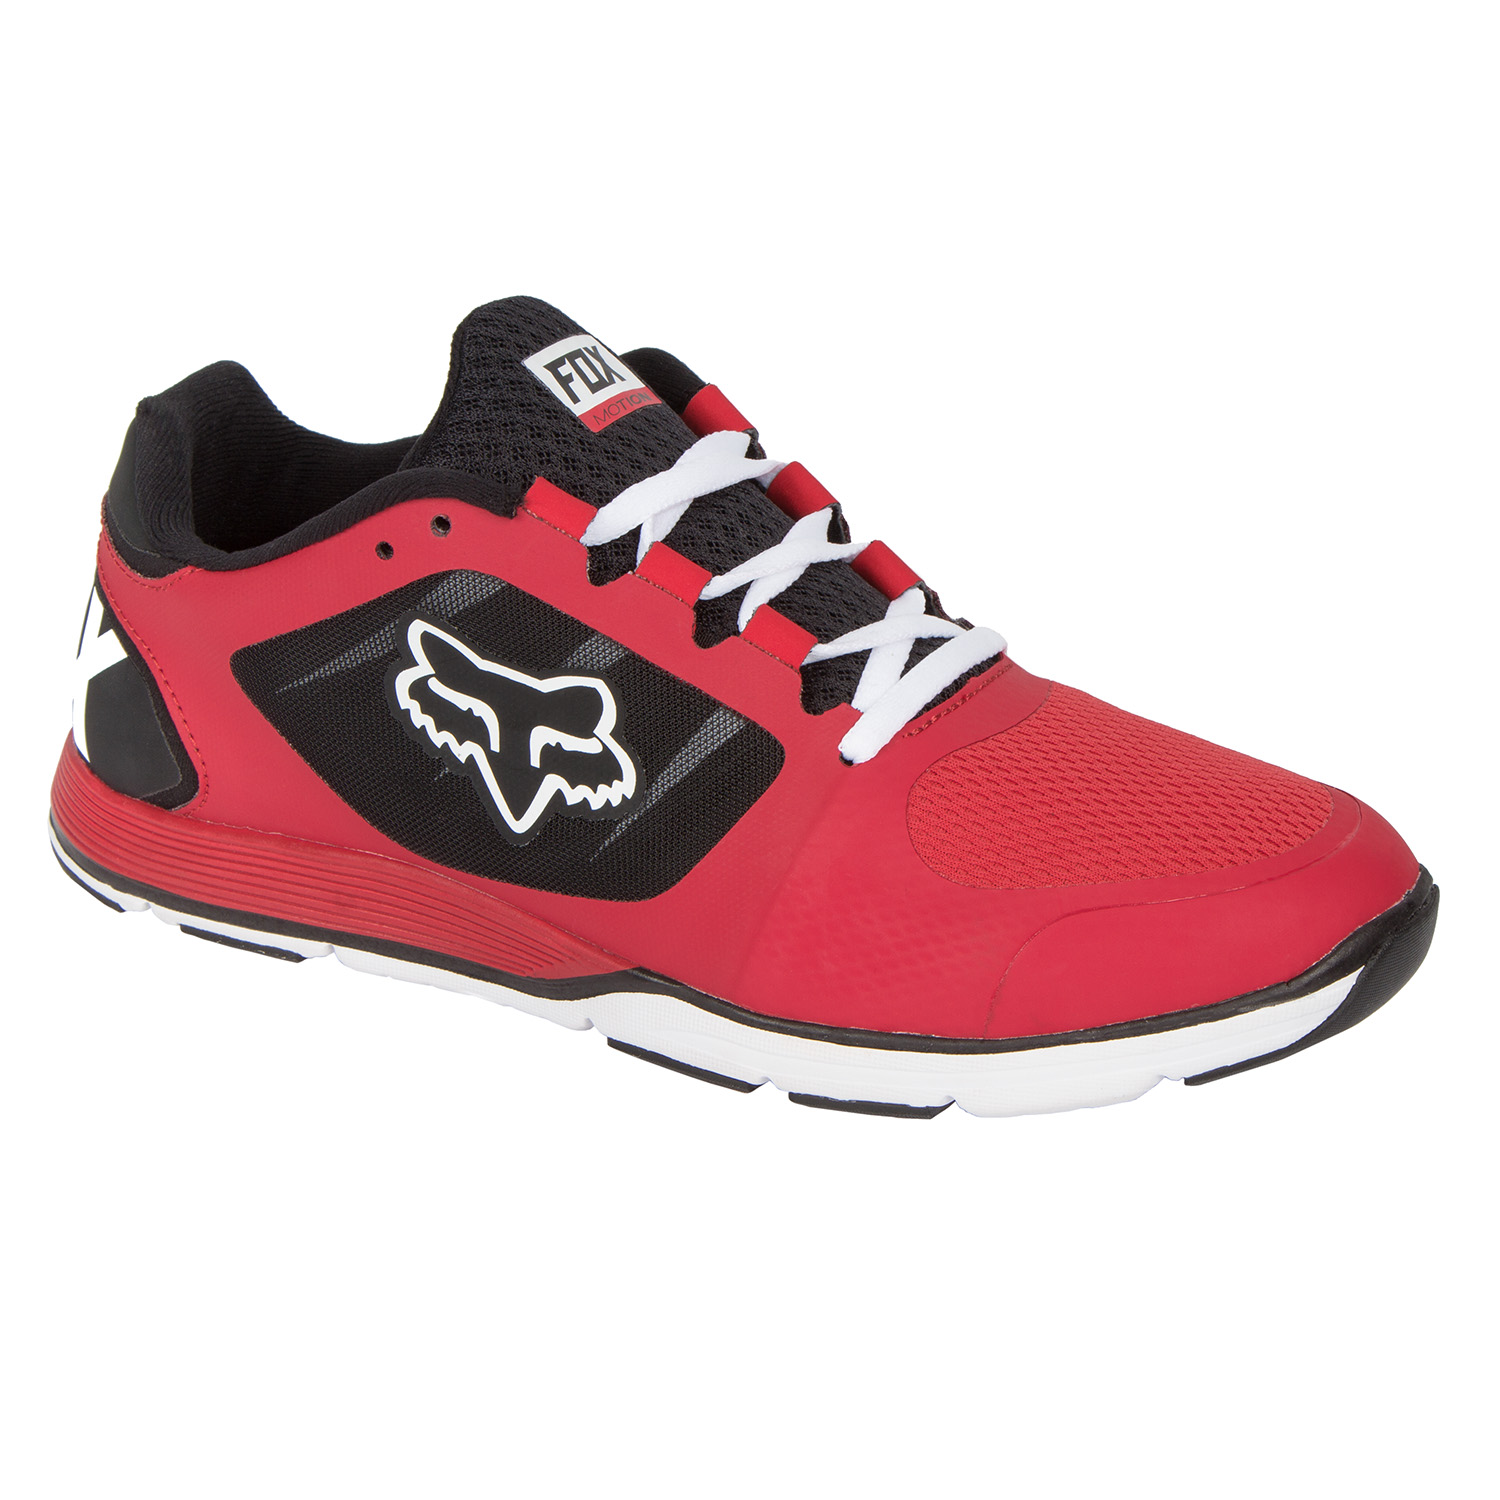 Fox Shoes Motion Evo Red/Black